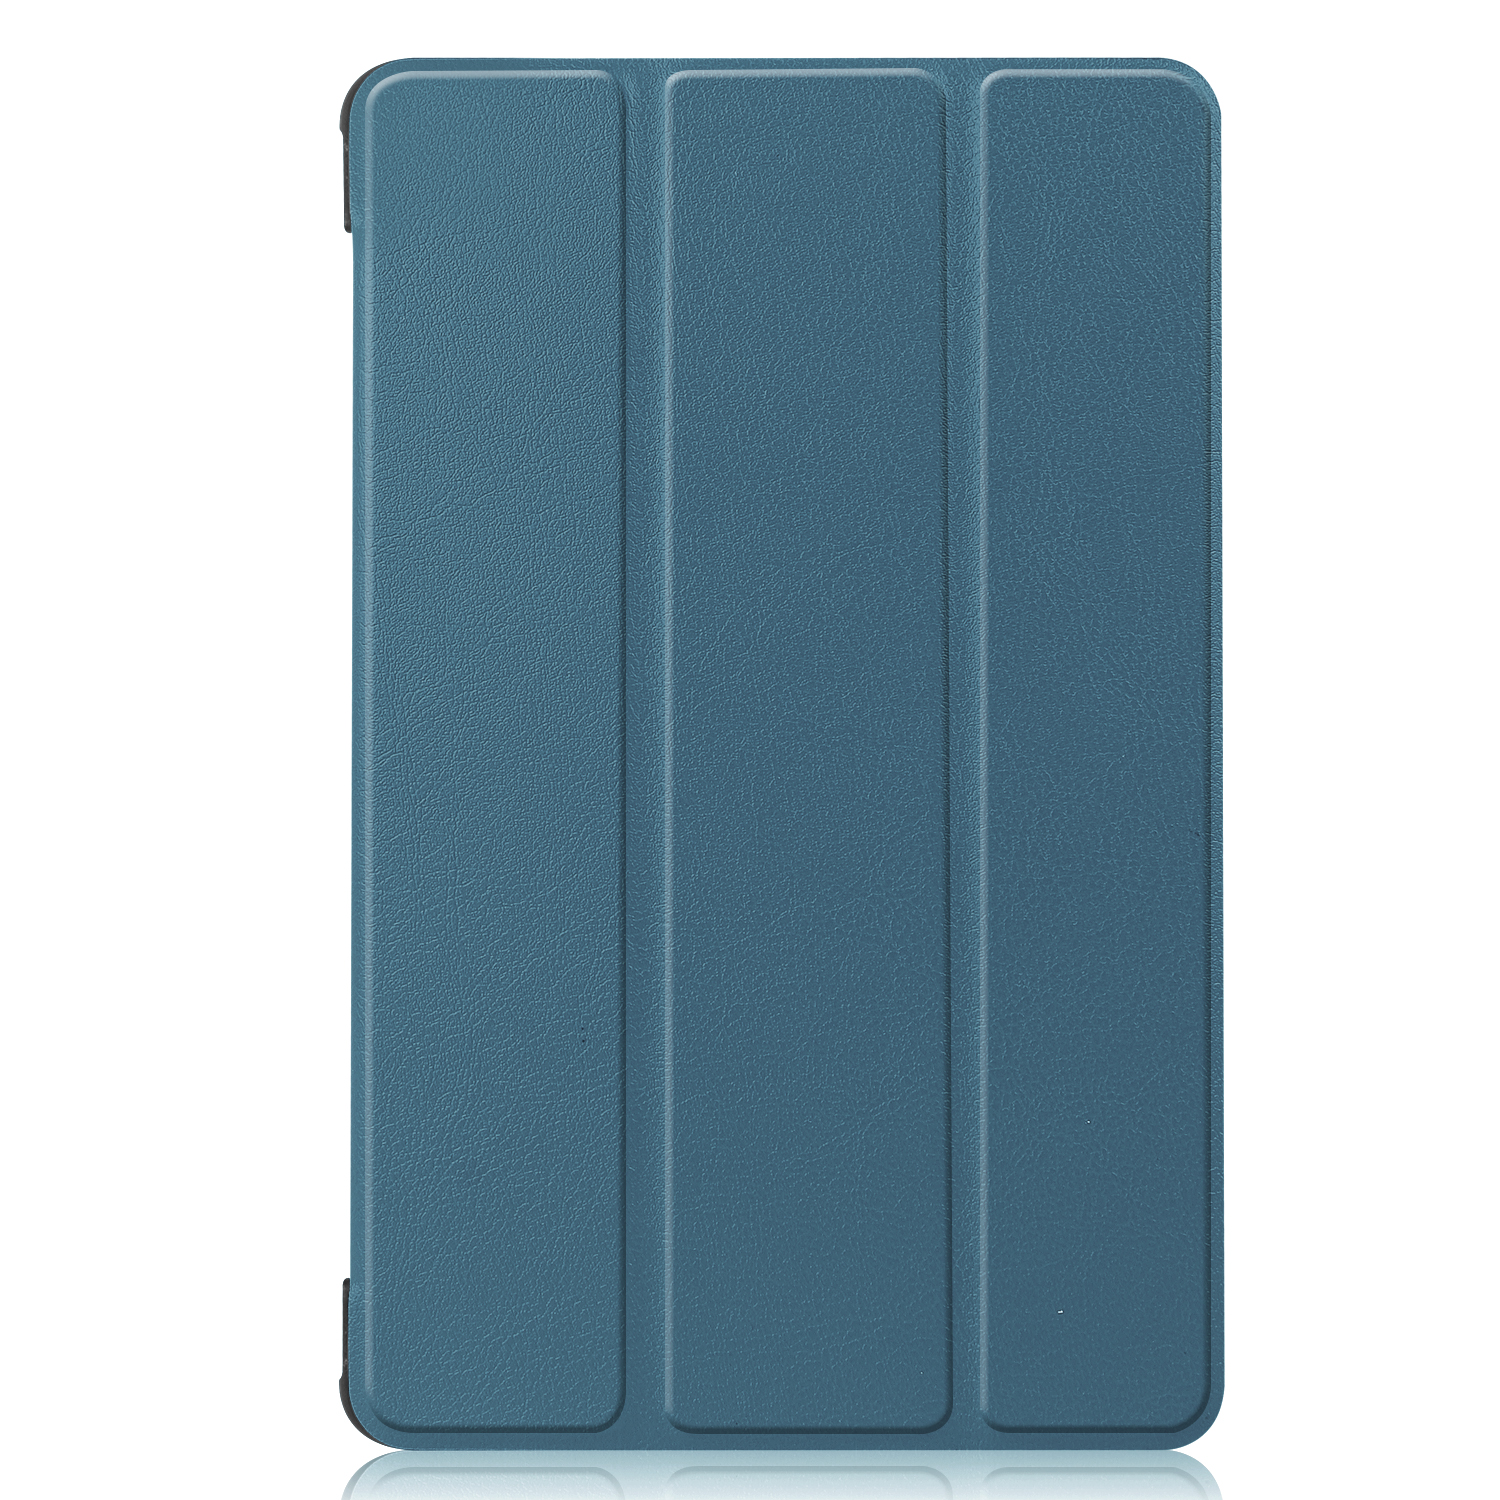 LOBWERK Hülle Schutzhülle für T8 MatePad Huawei Bookcover Grün Kunstleder, 8.0 Zoll